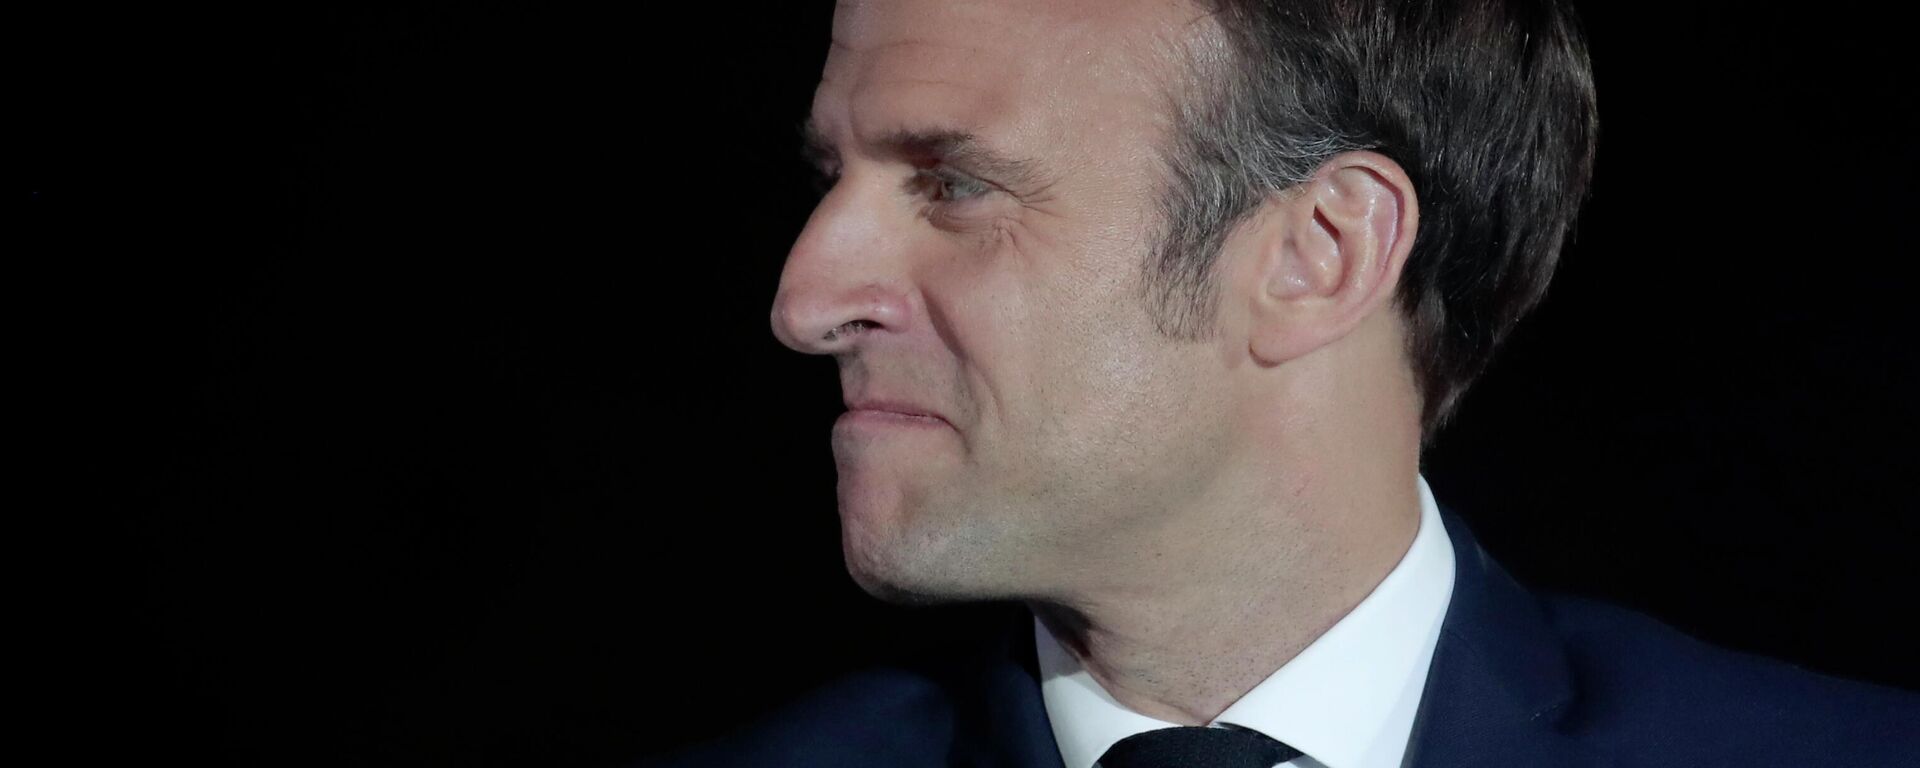 La reelección de Emmanuel Macron como el presidente de Francia - Sputnik Mundo, 1920, 25.04.2022